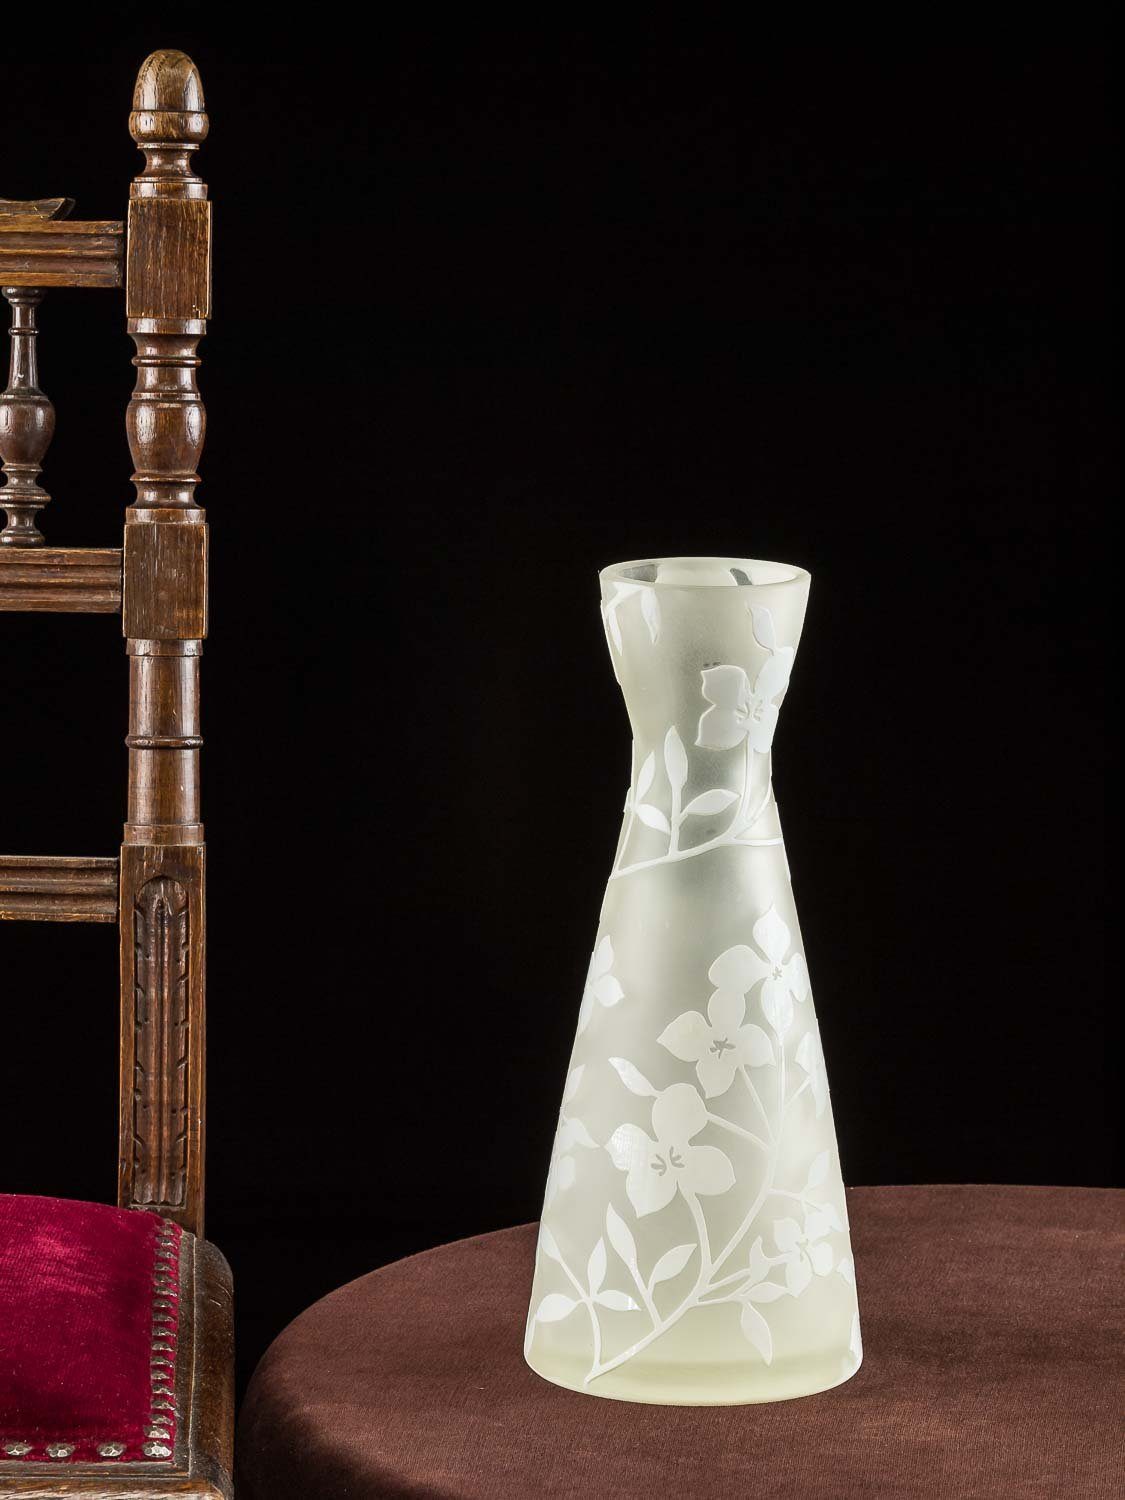 Aubaho Tischvase Glasvase Glas Antik-Stil des Nancy im Blumen Stil Tischvase Jugendstil 30cm Vase